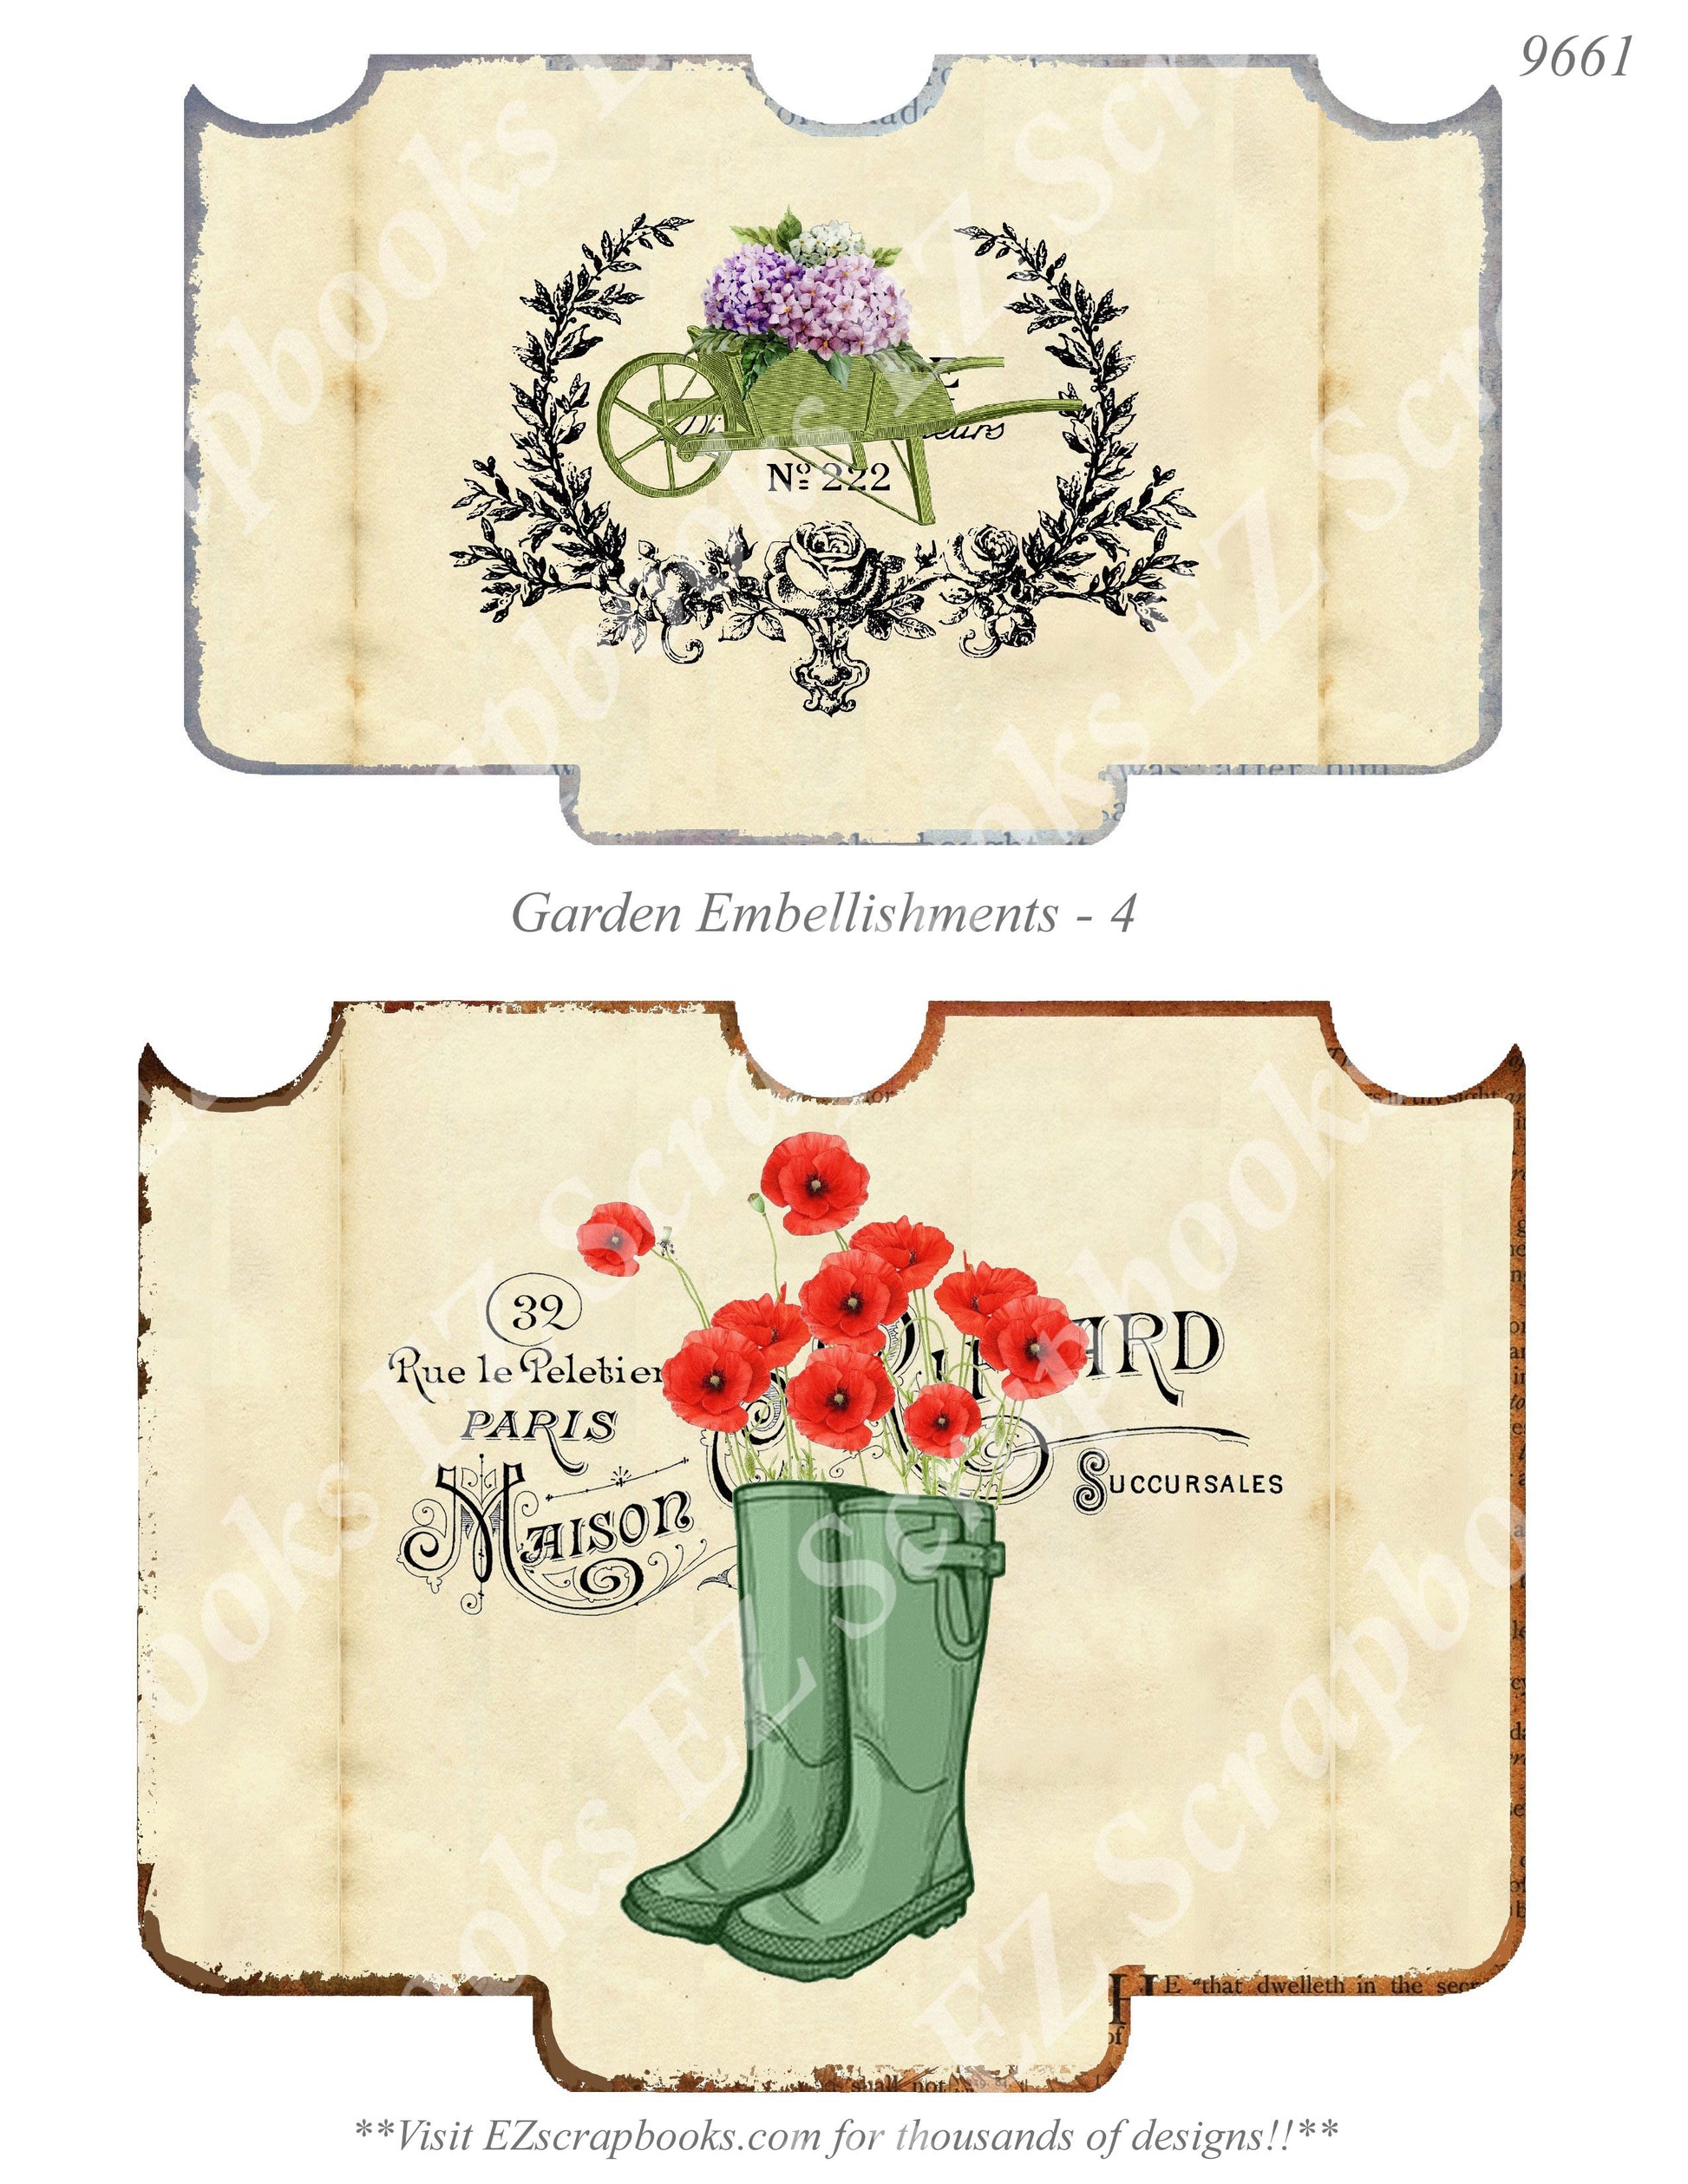 Garden - Embellishments - 4 - 9661 - EZscrapbooks Scrapbook Layouts Farm - Garden